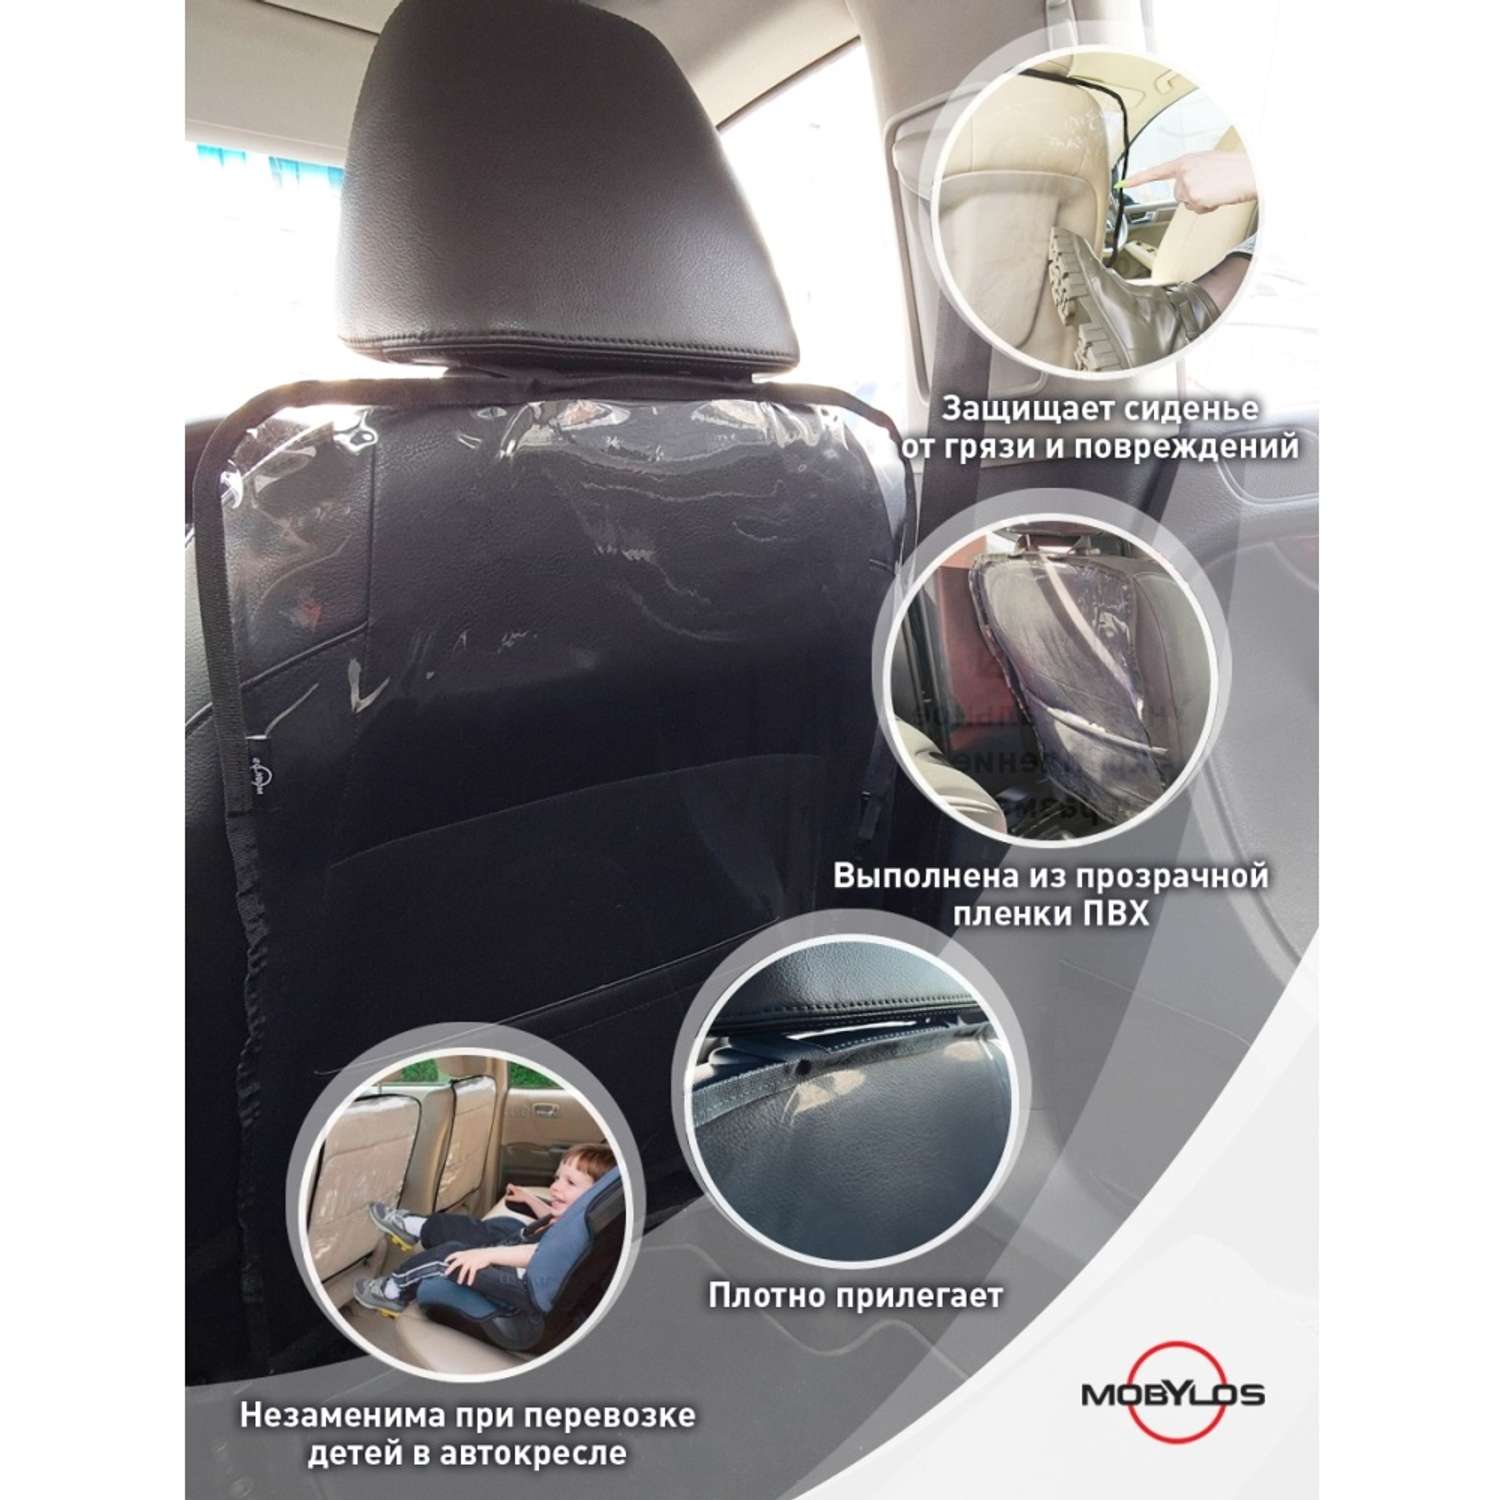 Защитная накидка Mobylos прозрачная защита от детских ног на спинку сиденья автомобиля - фото 6